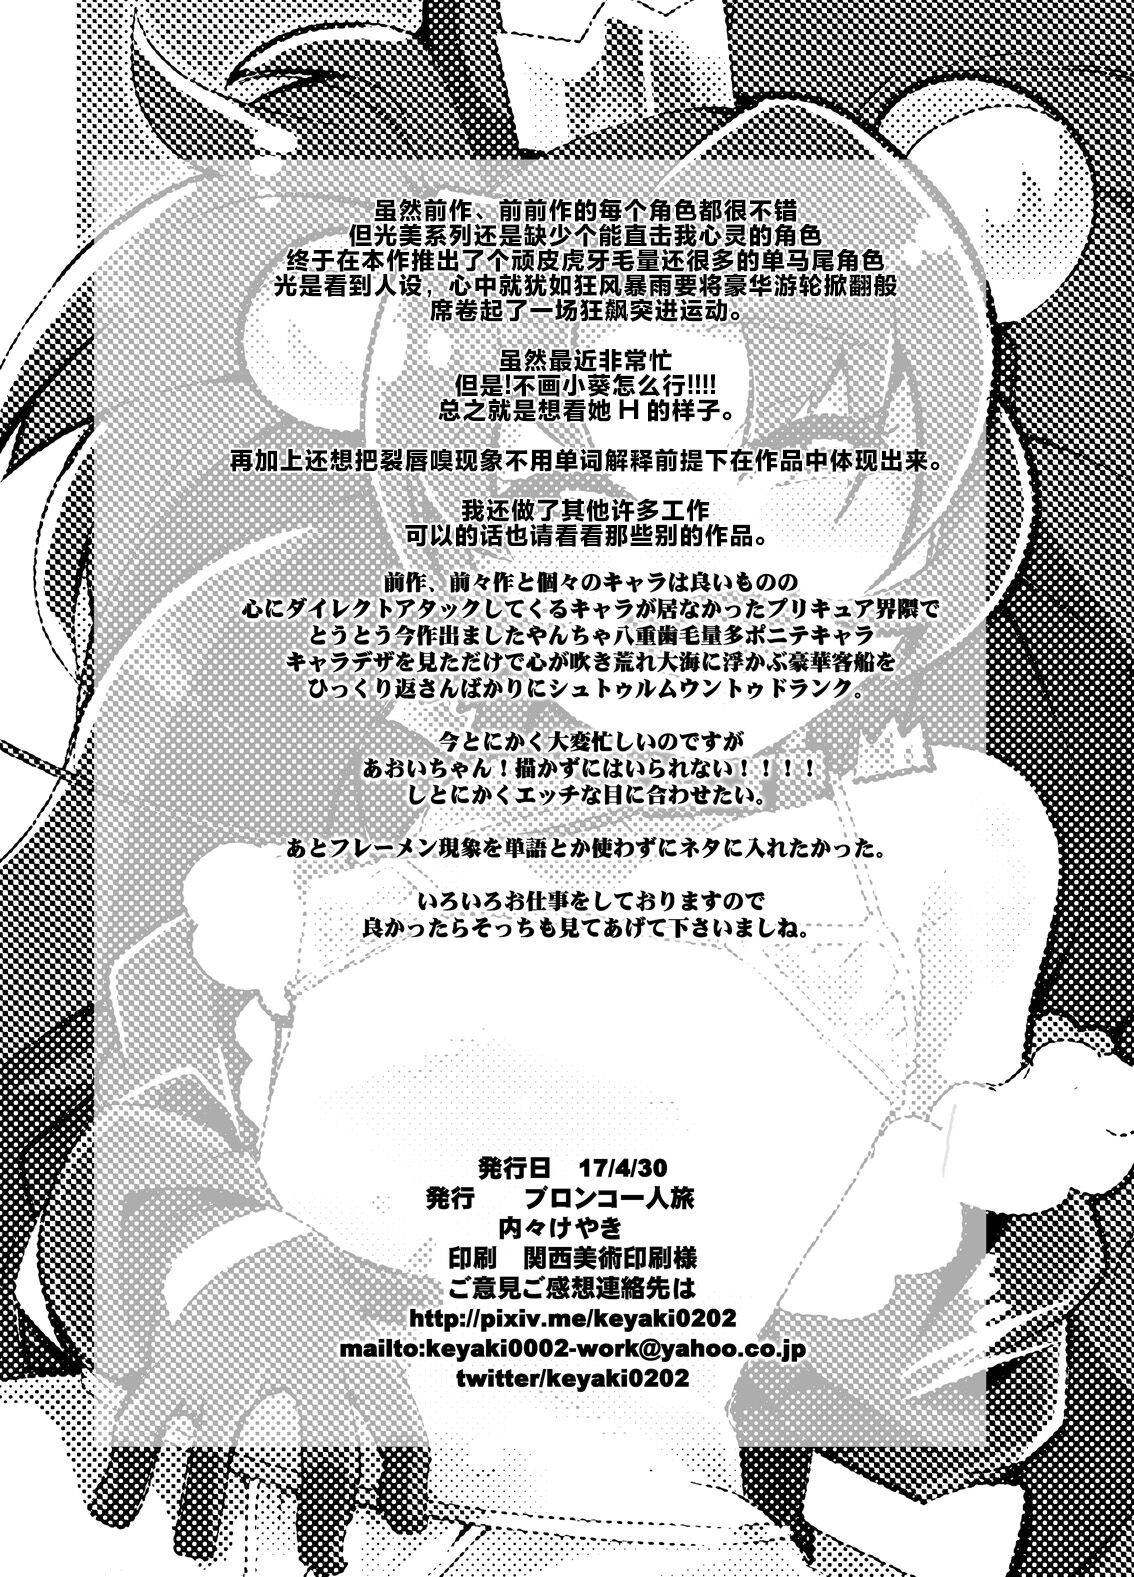 (COMIC1☆11) [ブロンコ一人旅 (内々けやき)] Beast Sex Friends (キラキラ☆プリキュア アラモード)